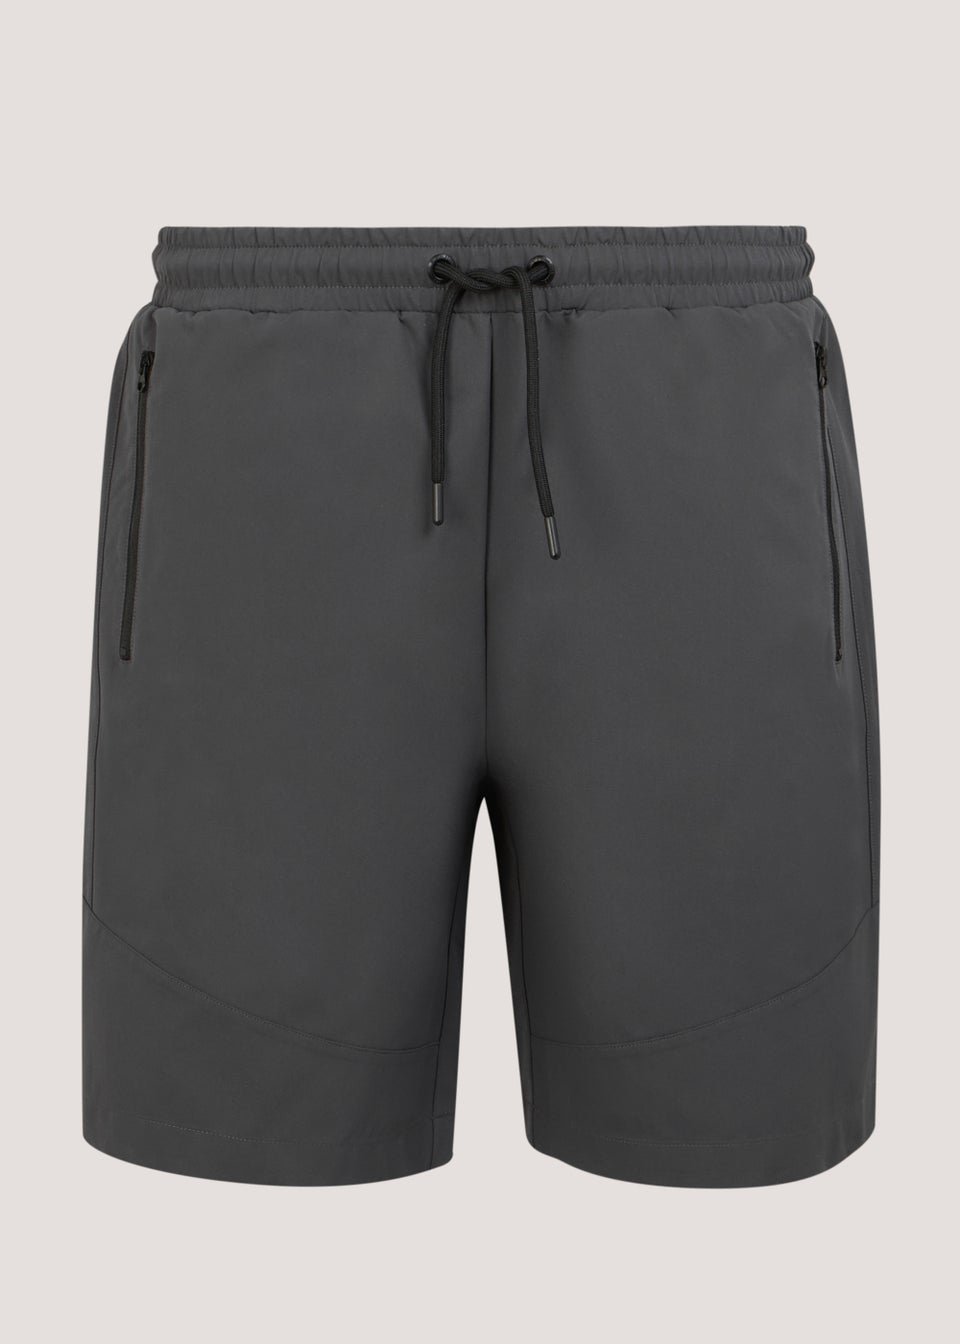 US Athletic Grey Woven Shorts - Matalan